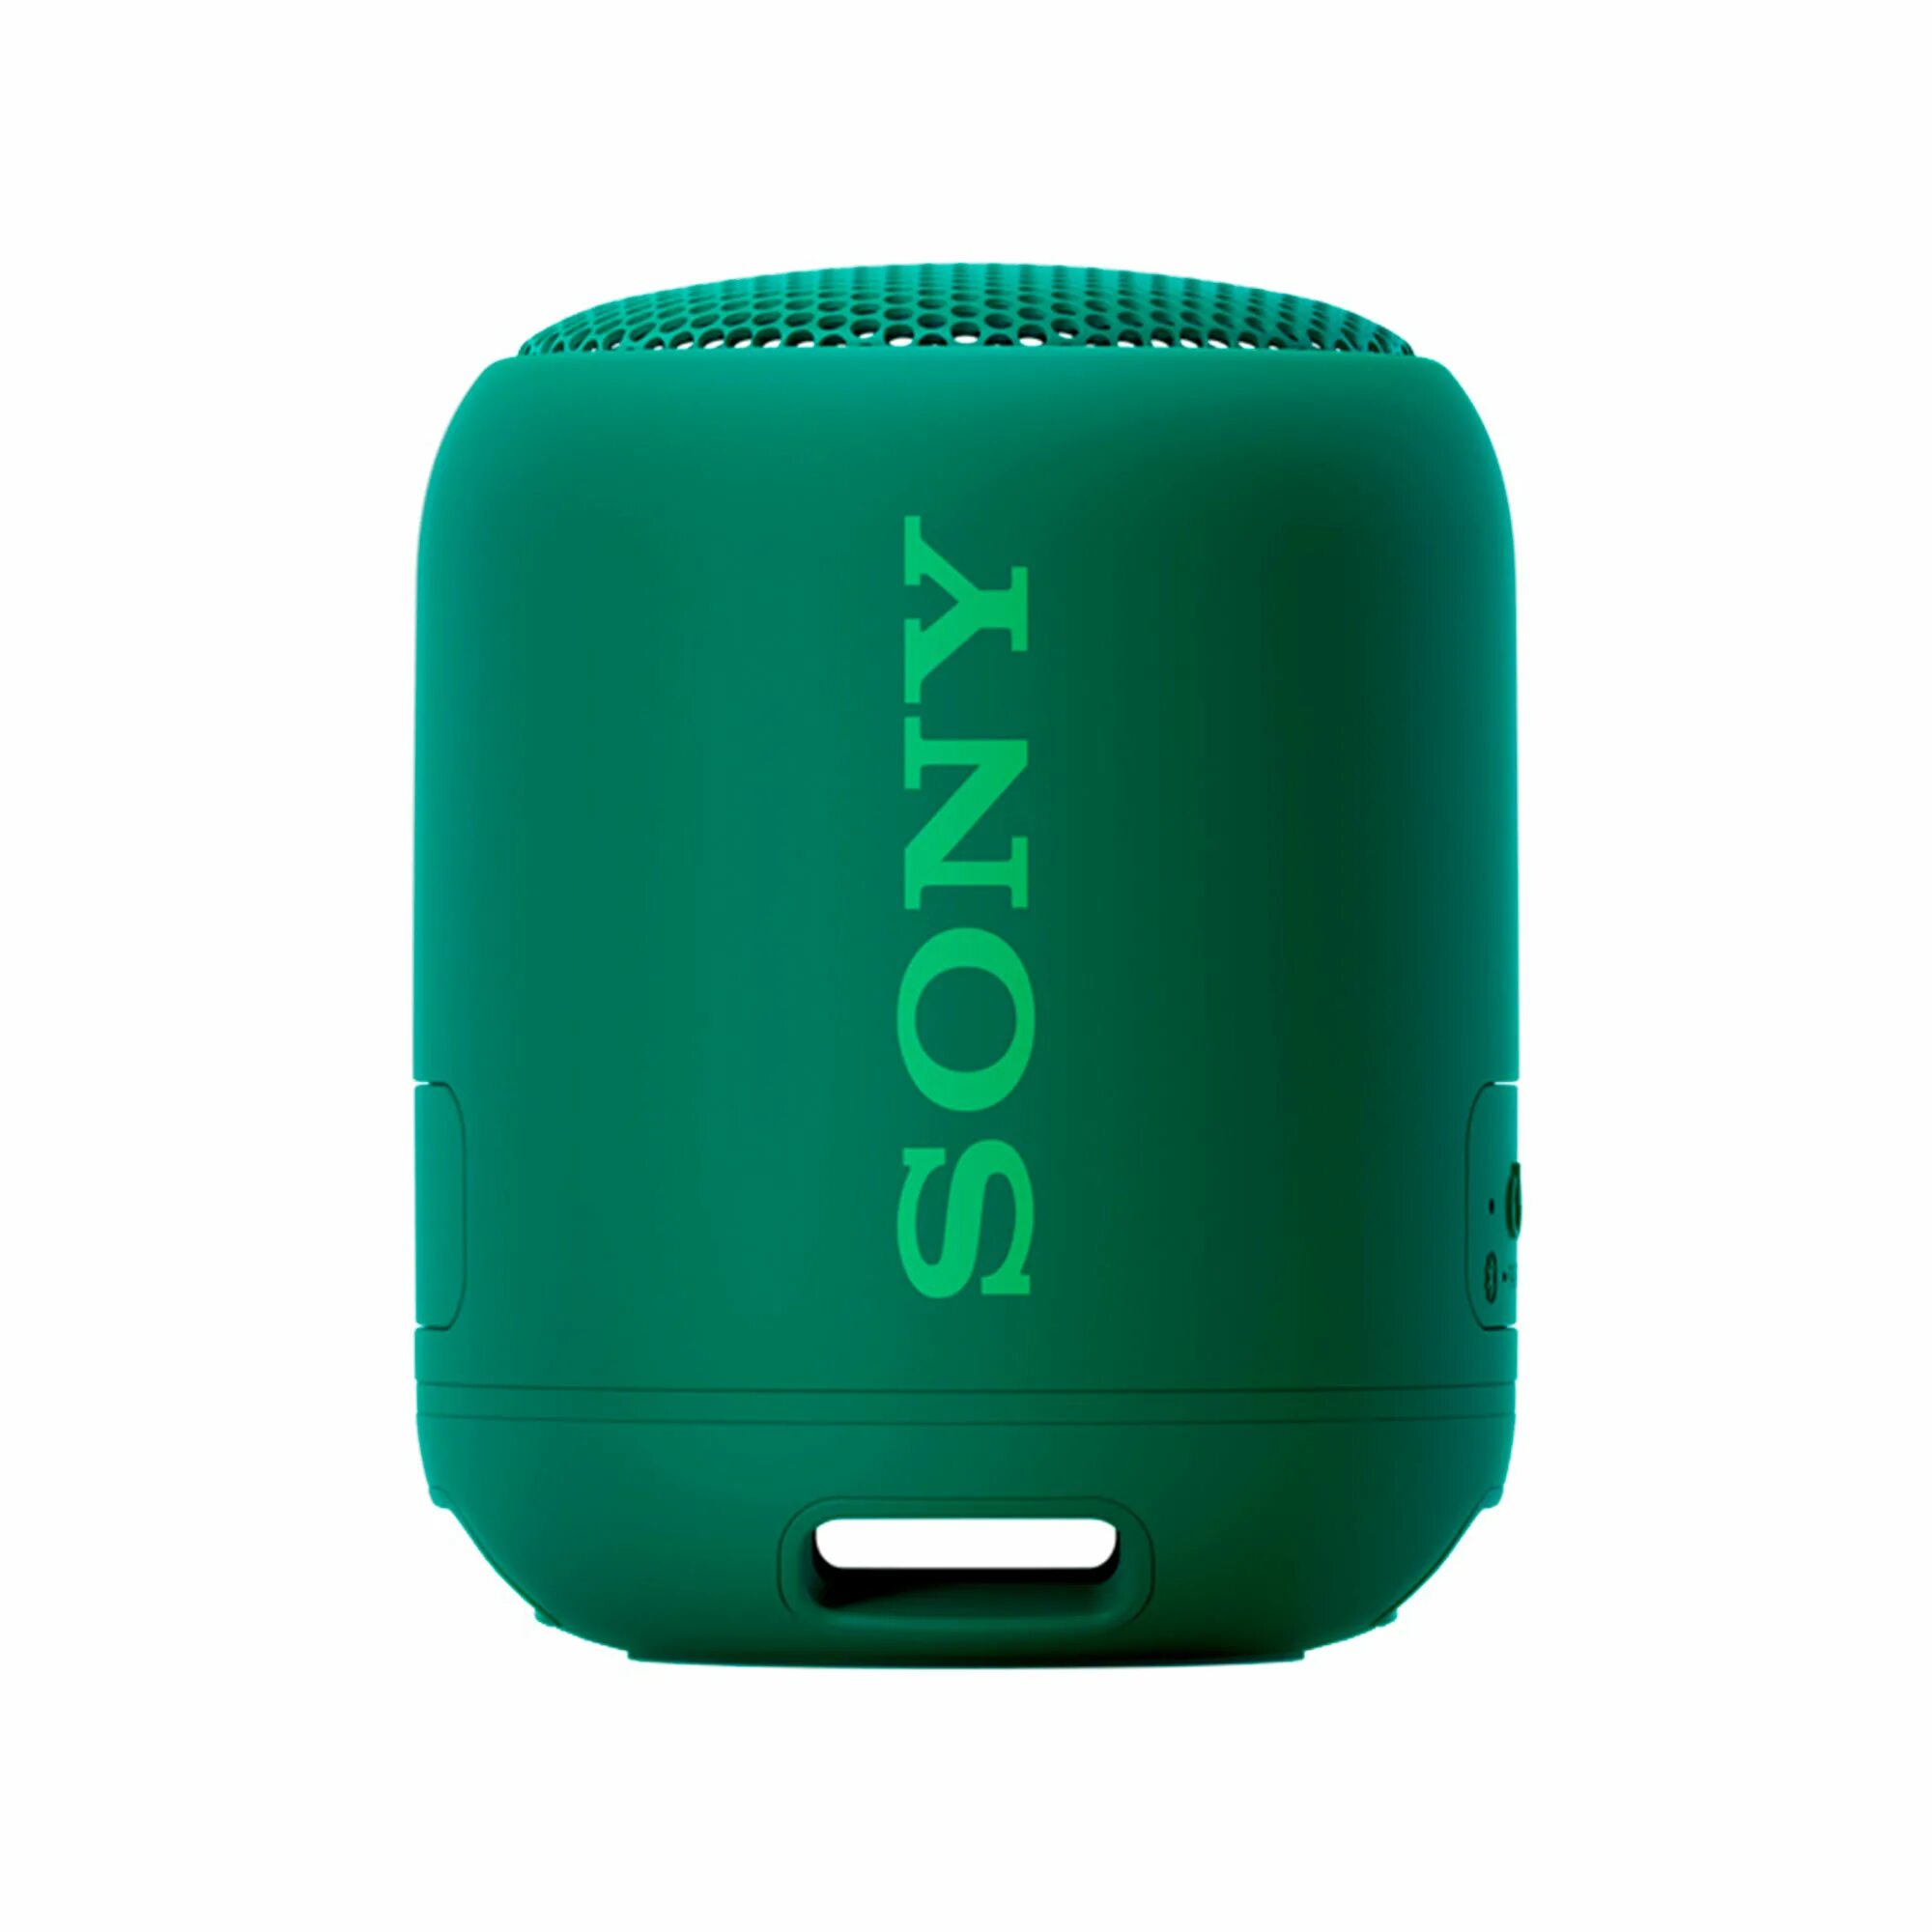 Купить лучшую портативную колонку. Sony SRS-xb10. Колонка Sony SRS xb12. Портативная колонка Sony SRS-xb12 красный. Sony колонка Bluetooth SRS-xb10.